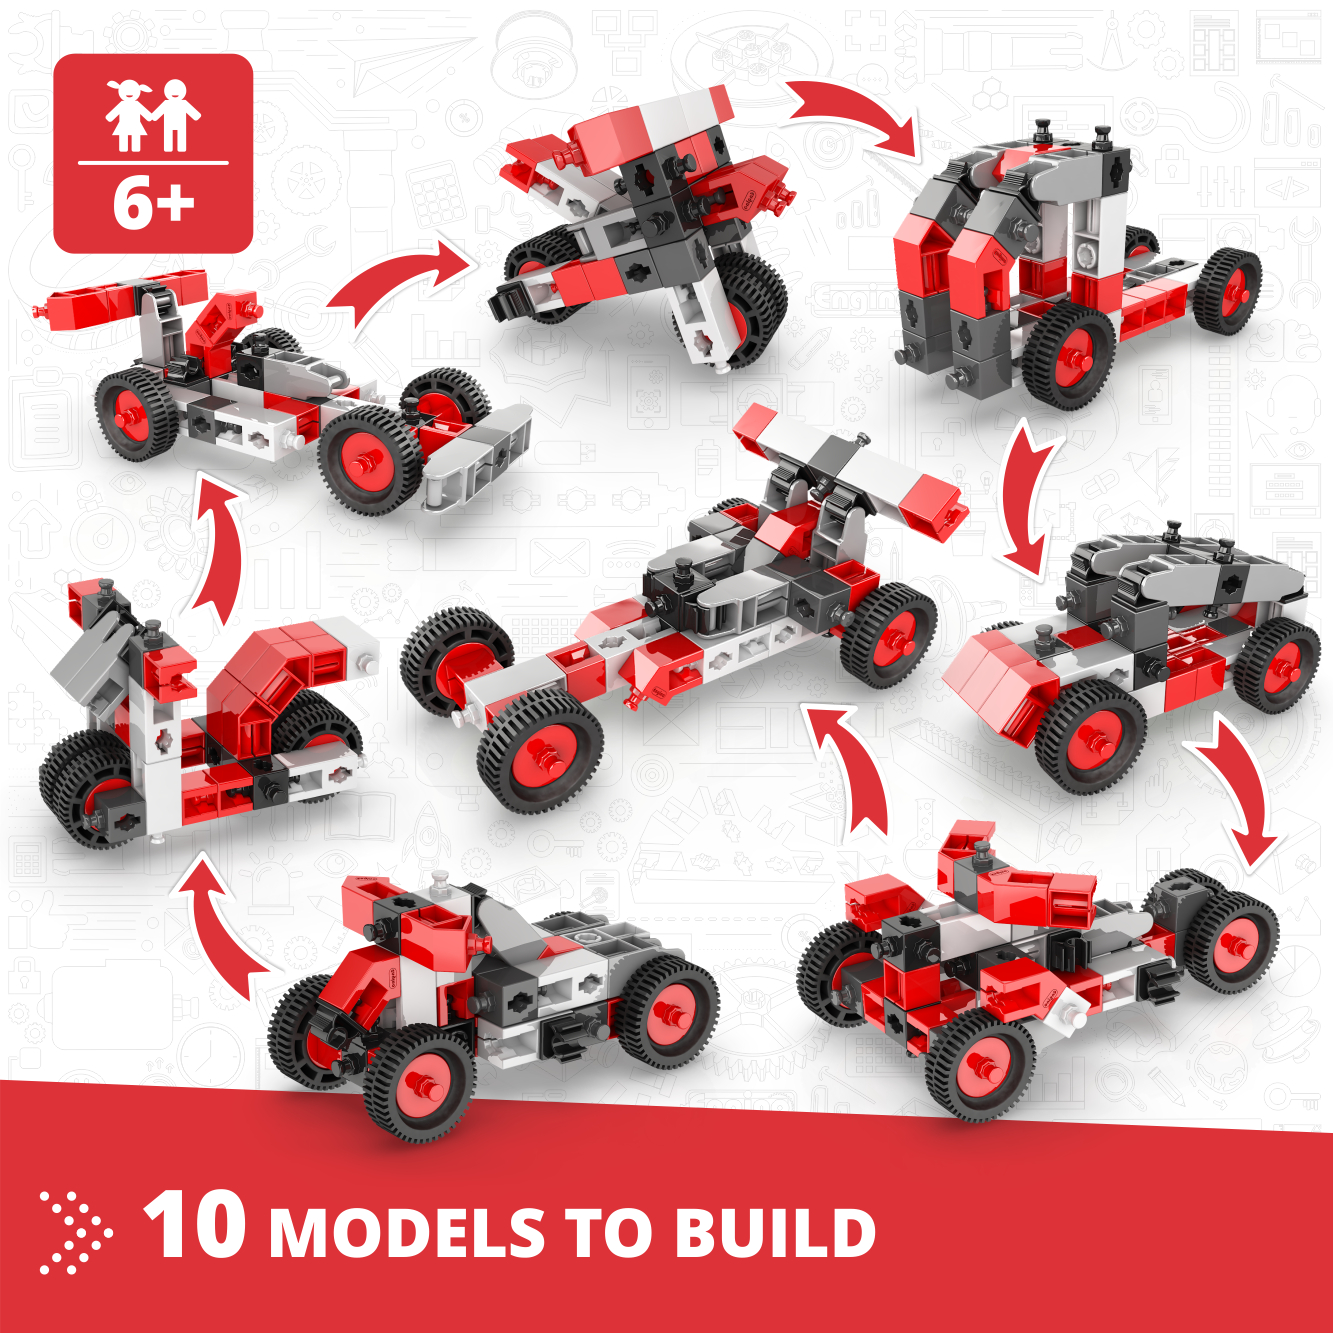 CREATIVE BUILDER - 10 MODELS MULTIMODEL SET Product Image